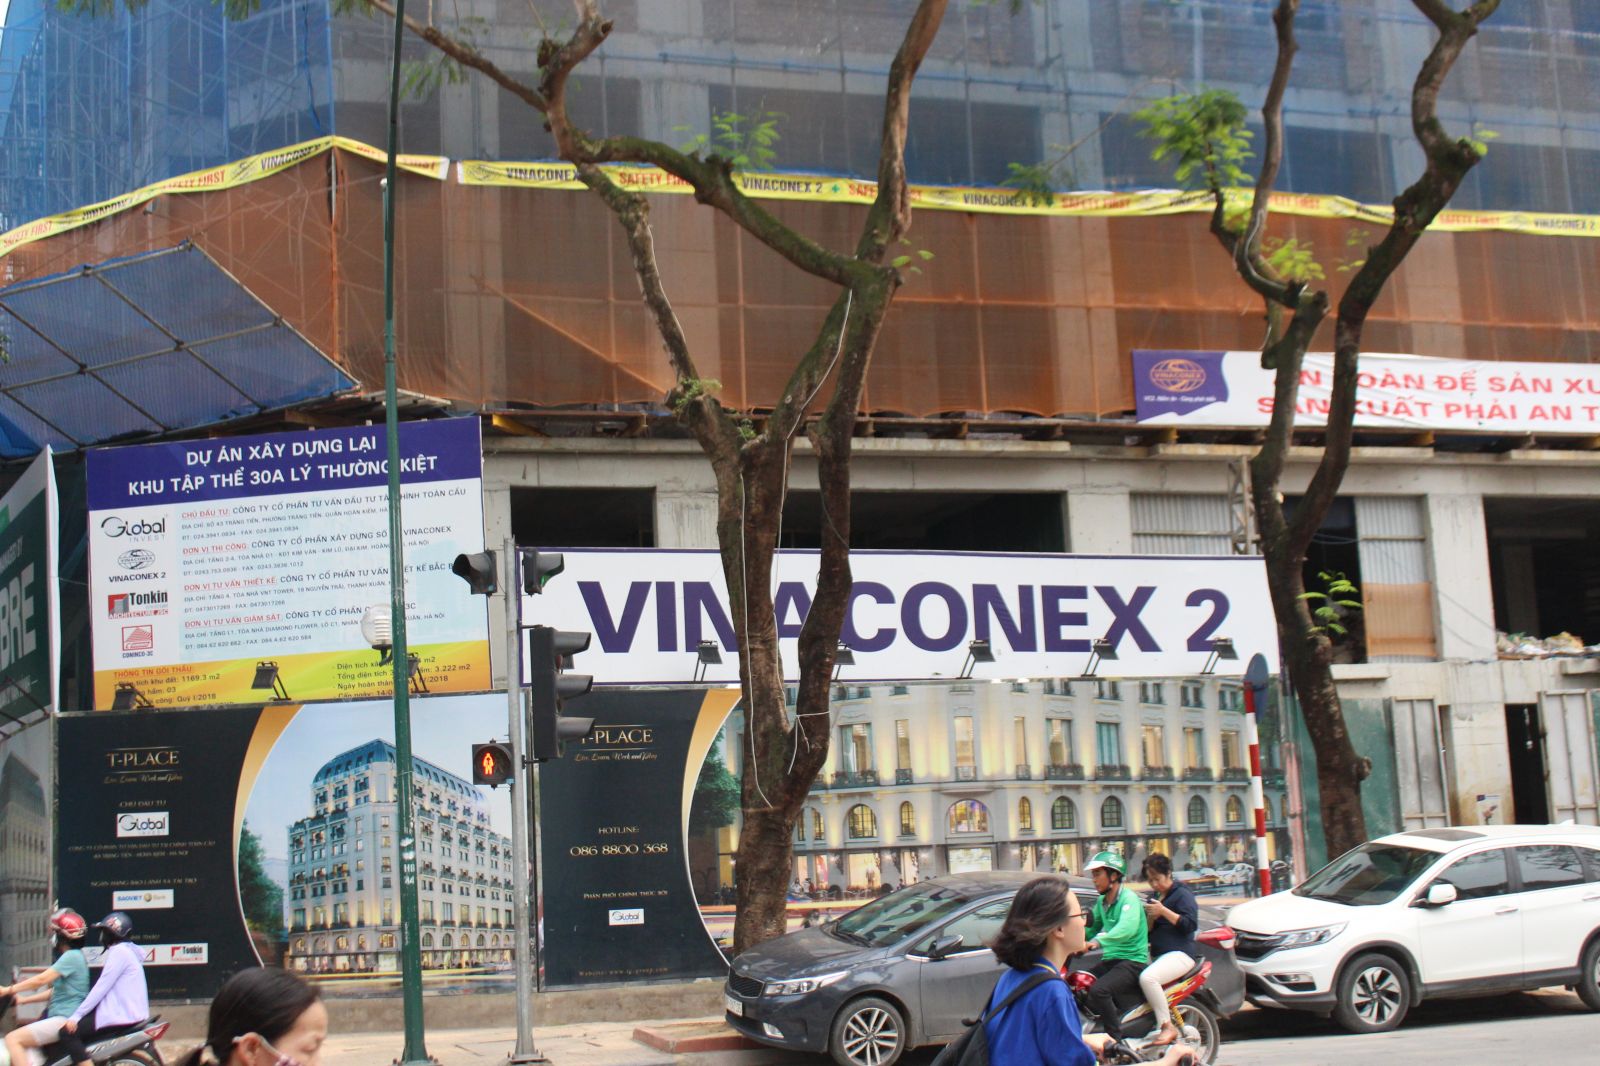 Dự án do Tổng Công ty cổ phần xây dựng số 2 – Vinaconex làm đơn vị thi công.